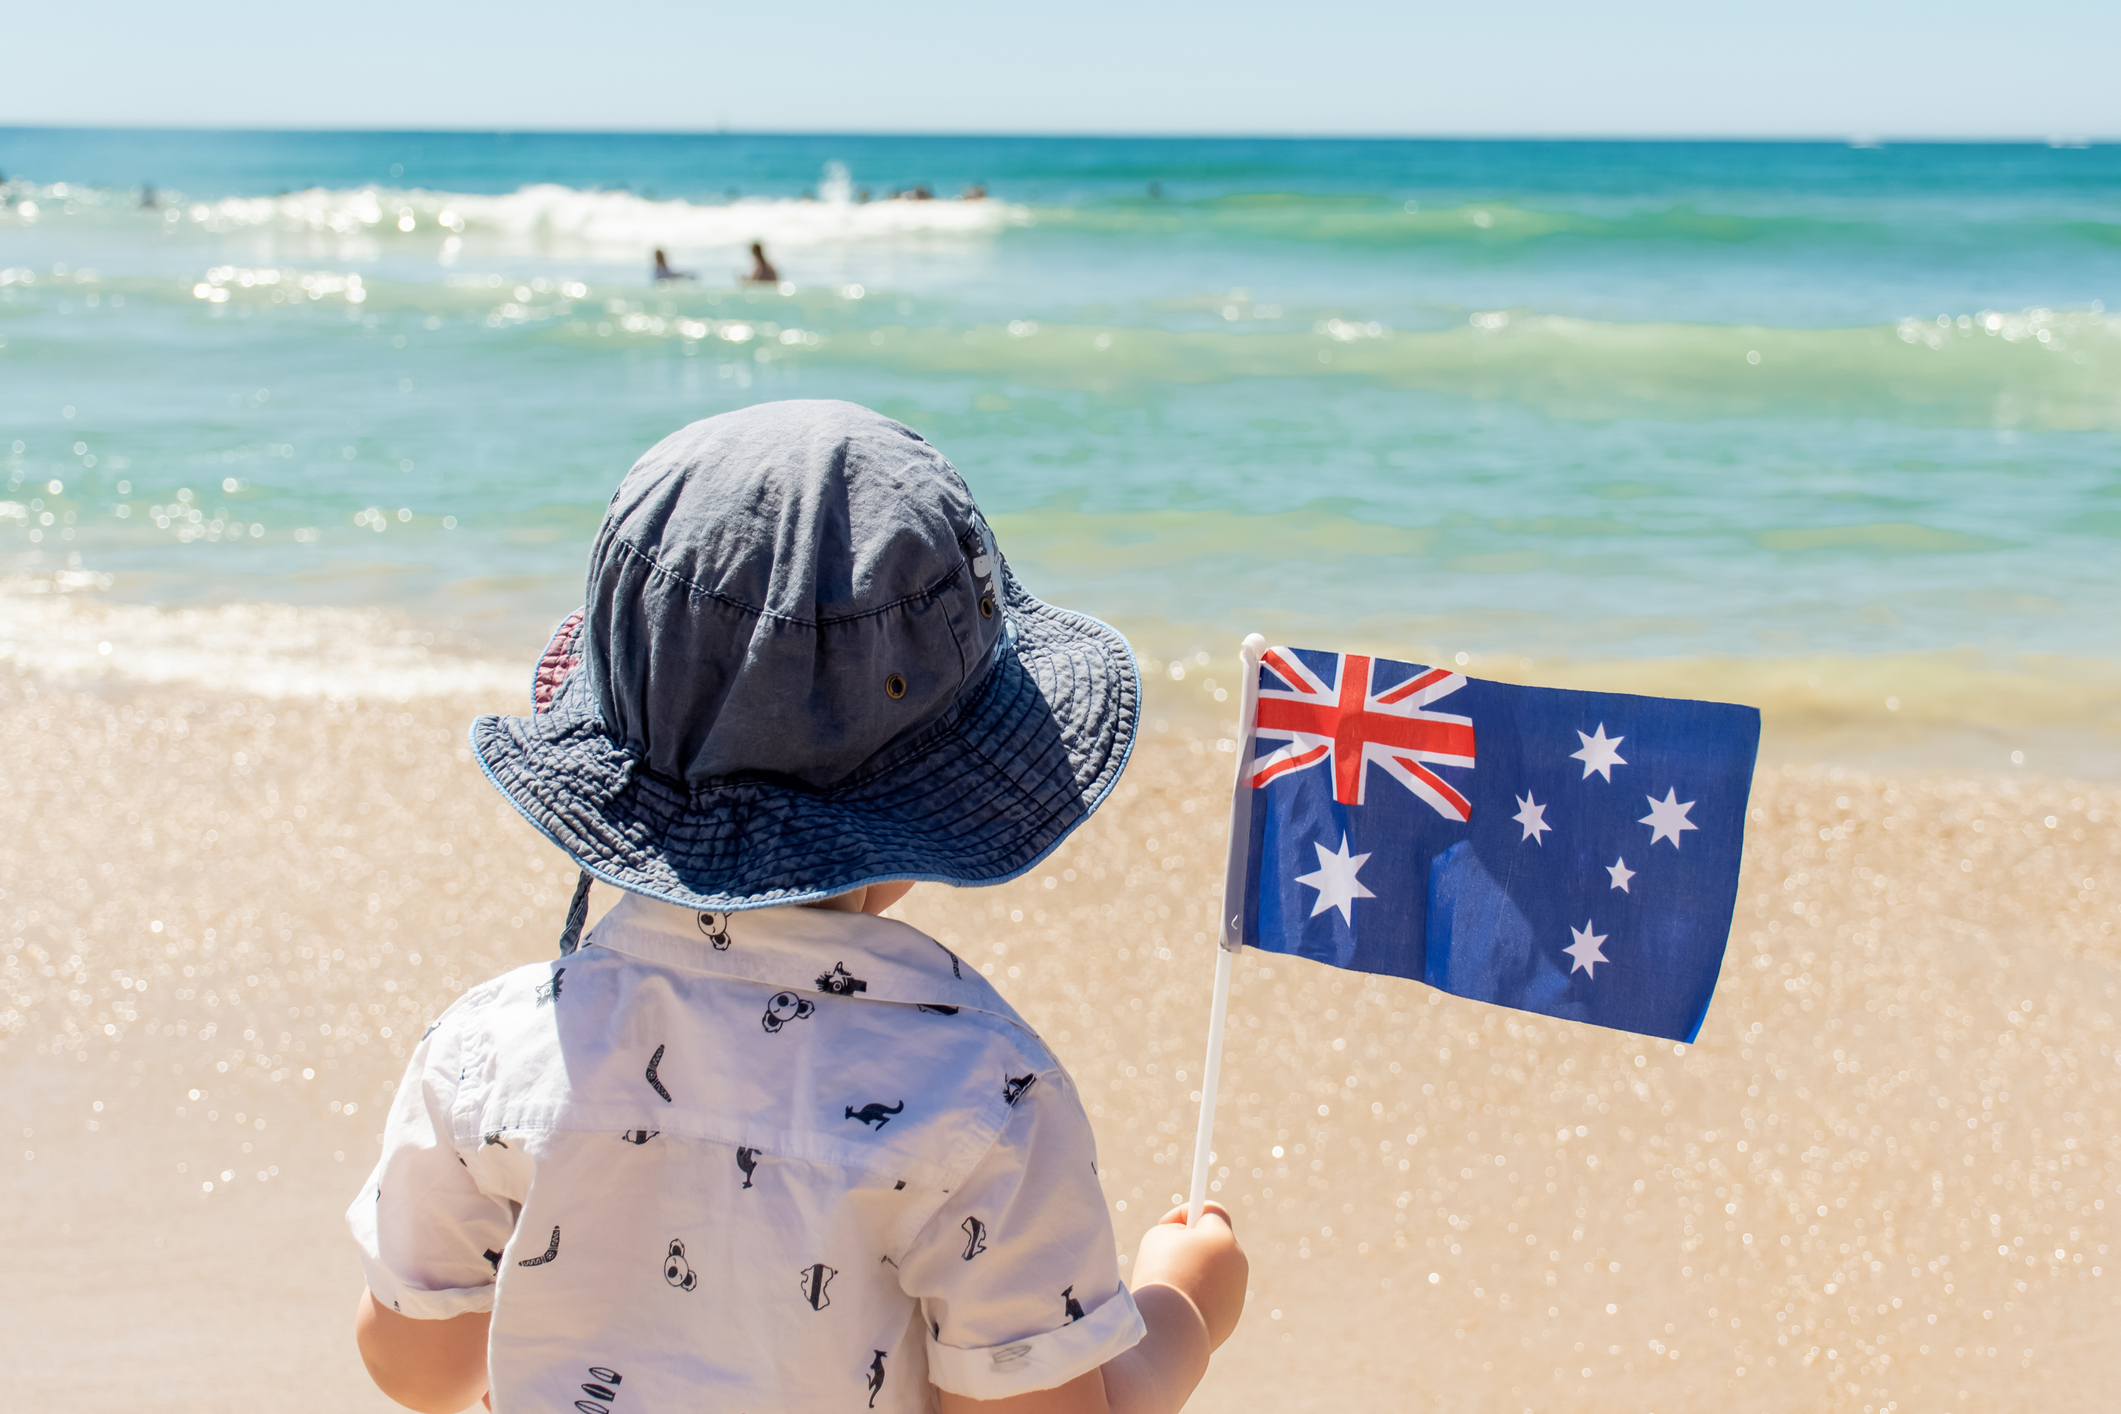 Cậu bé đội mũ giữ cờ Úc trên bãi biển cát. Khái niệm Ngày Úc